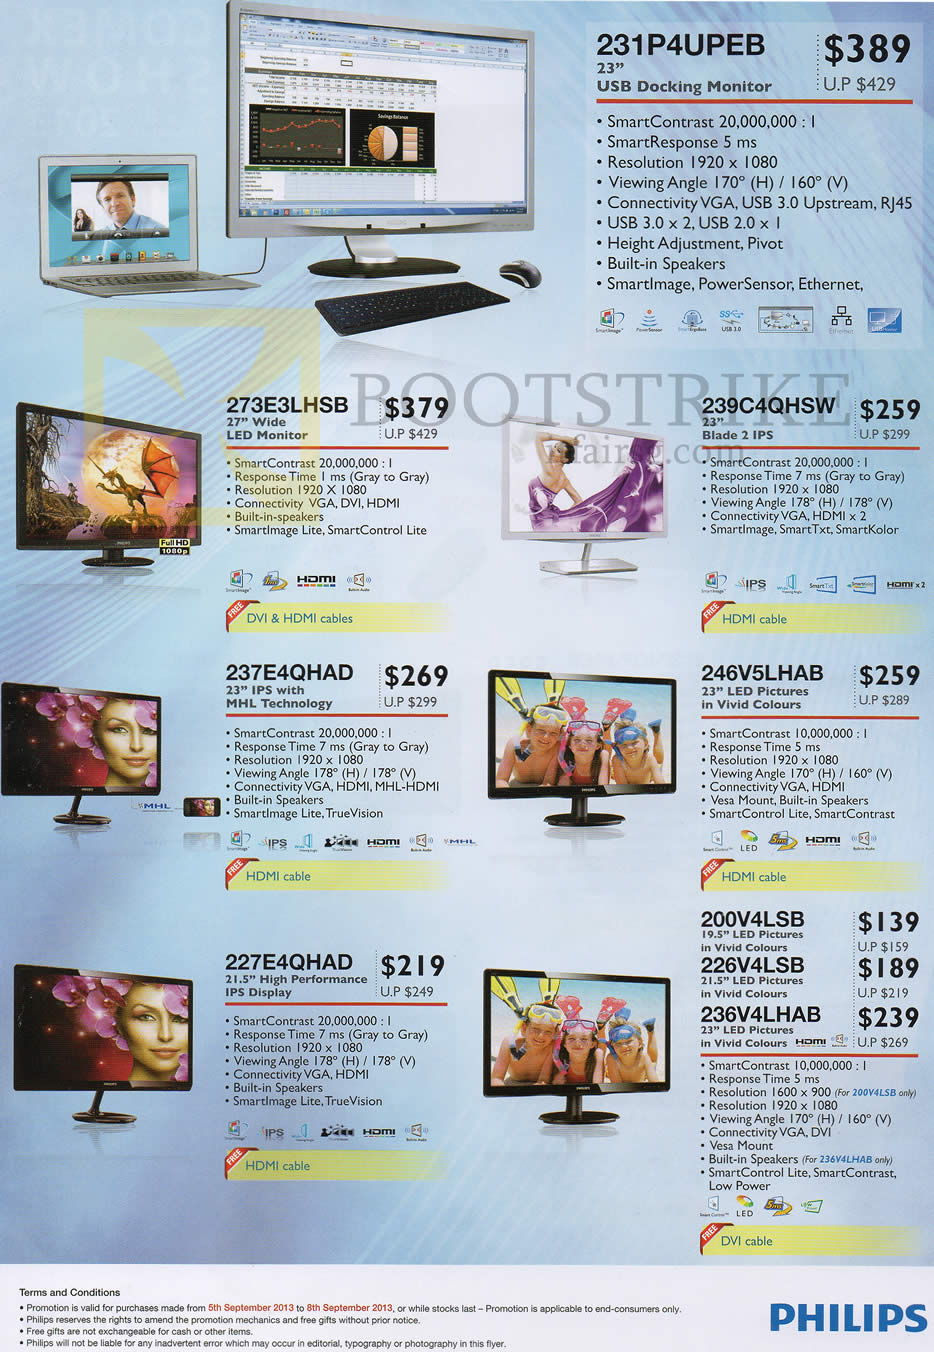 COMEX 2013 price list image brochure of Newstead Philips Monitors 231P4UPEB, 273E3LHSB, 239C4QHSW, 237E4QHAD, 246VHLHAB, 227E4QHAD, 200V4LSB, 226V4LSB, 236V4LHAB